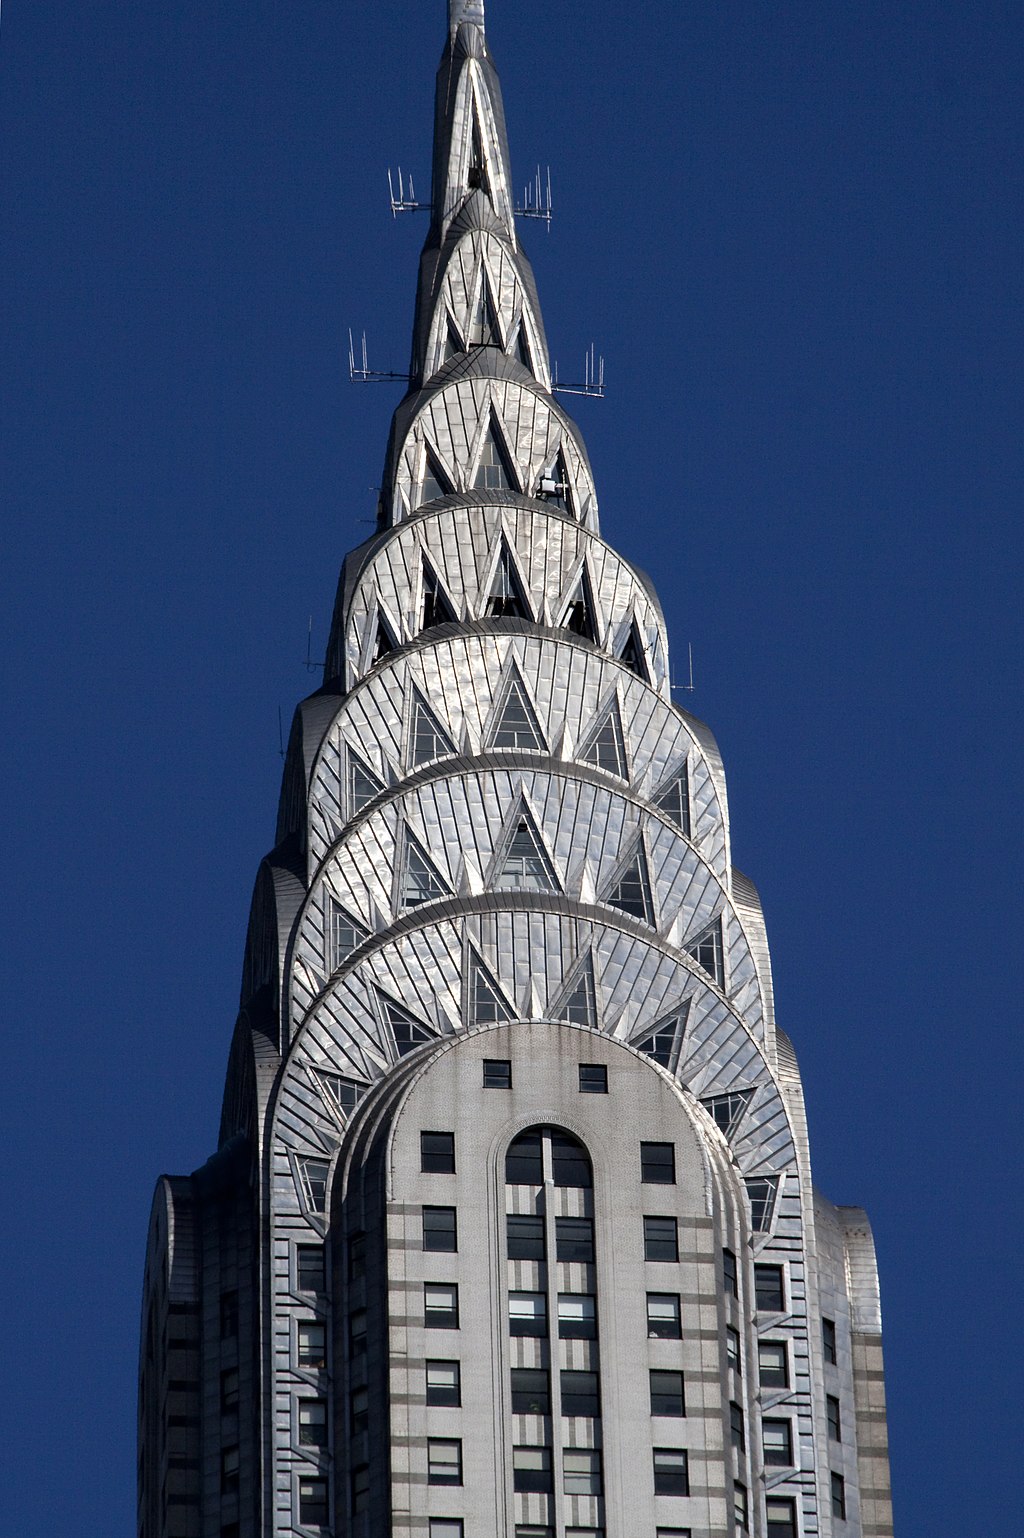 Design do edifício Chrysler Building, um dos símbolos arquitetônicos da Art Decó (Foto: Tony Hisgett from Birmingham, UK)